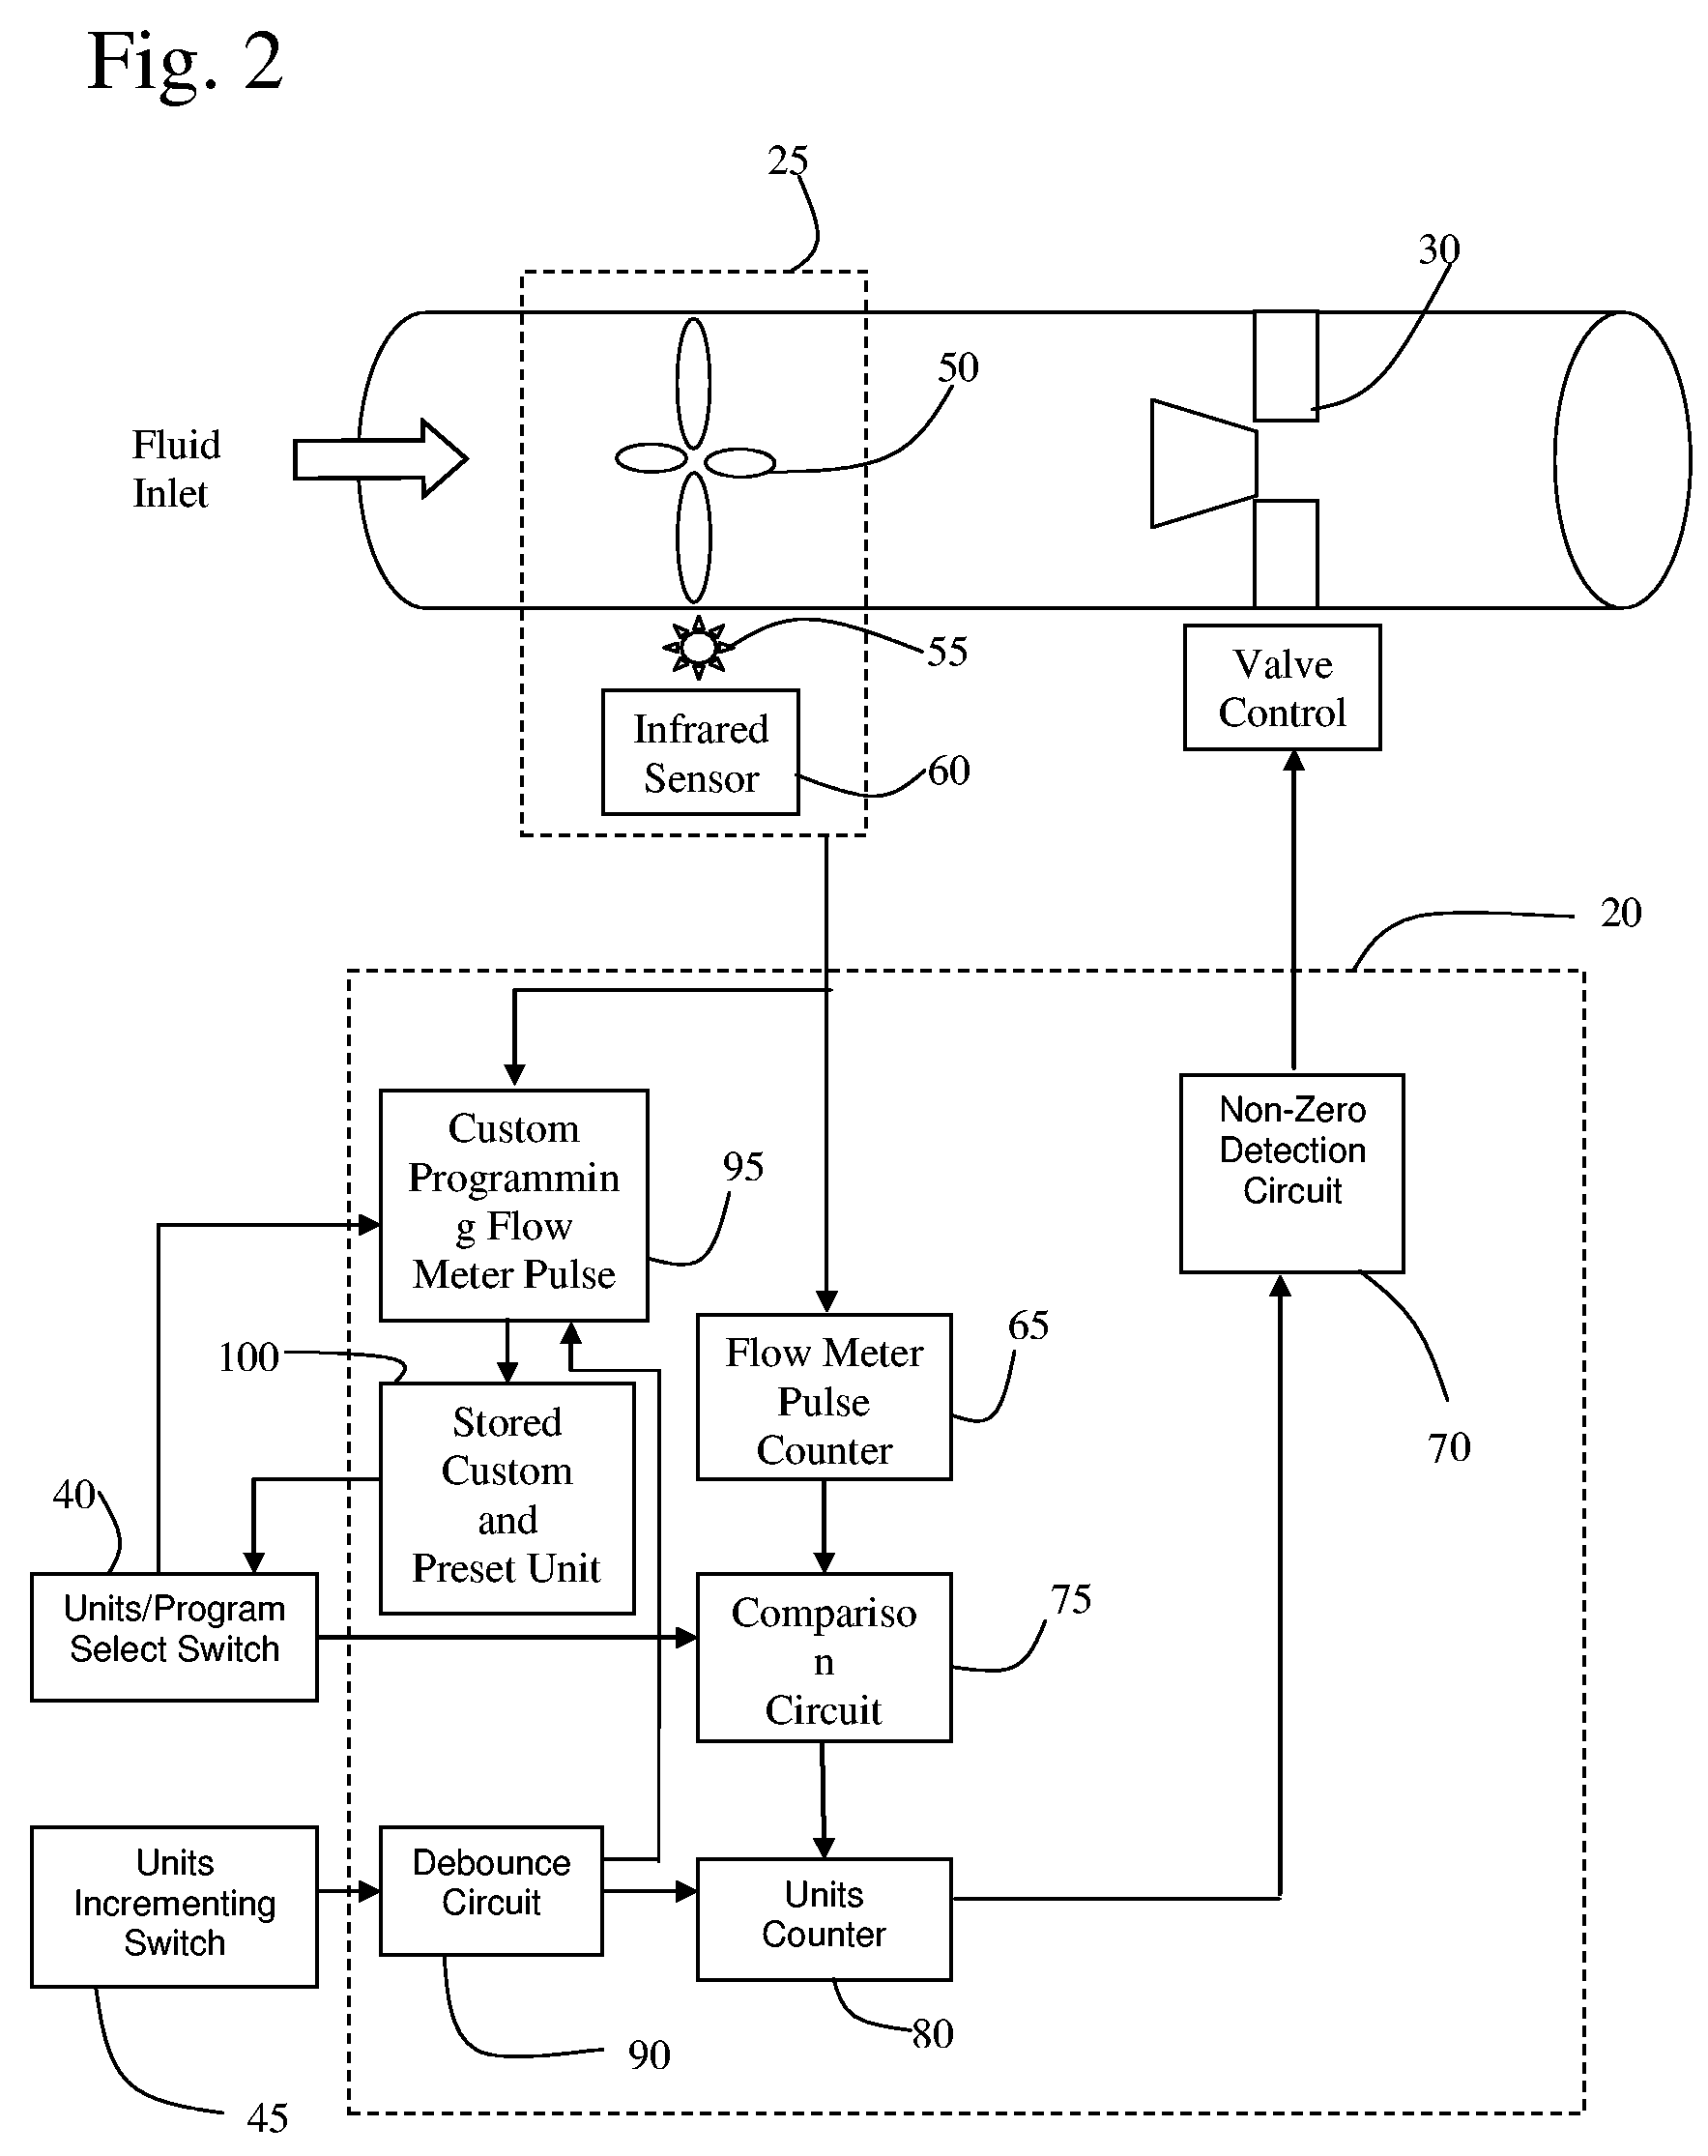 Volumetric control apparatus for fluid dispensing